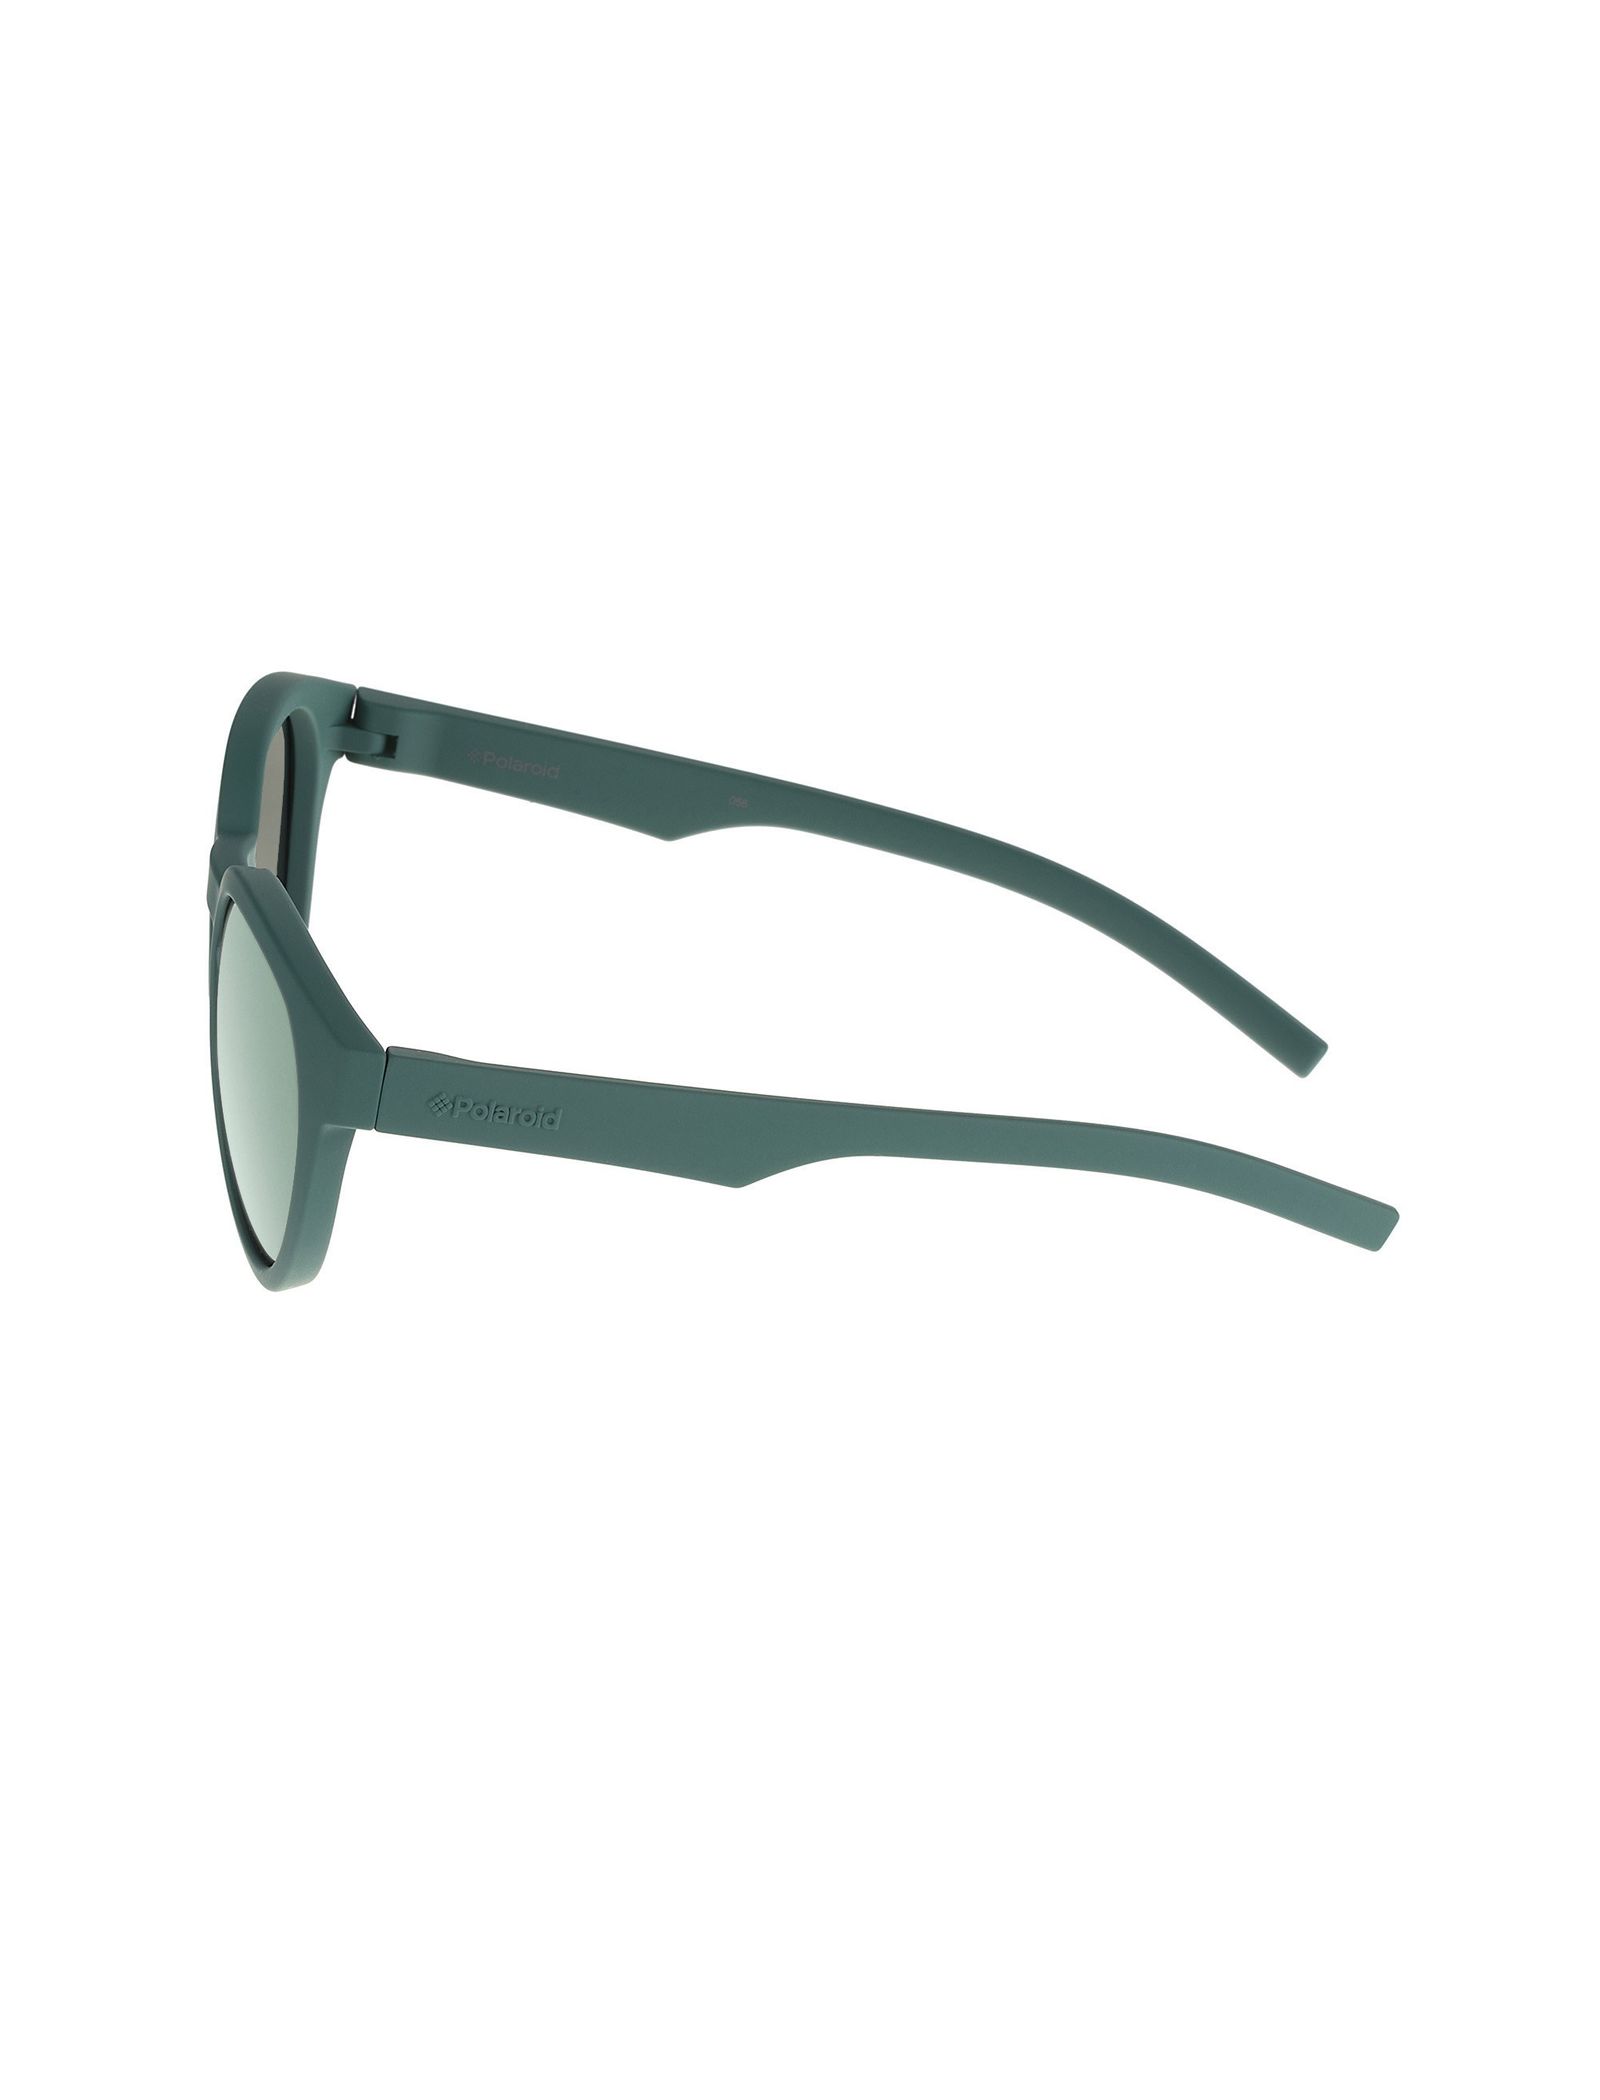 عینک آفتابی پنتوس بچگانه - پولاروید - سبز - 4